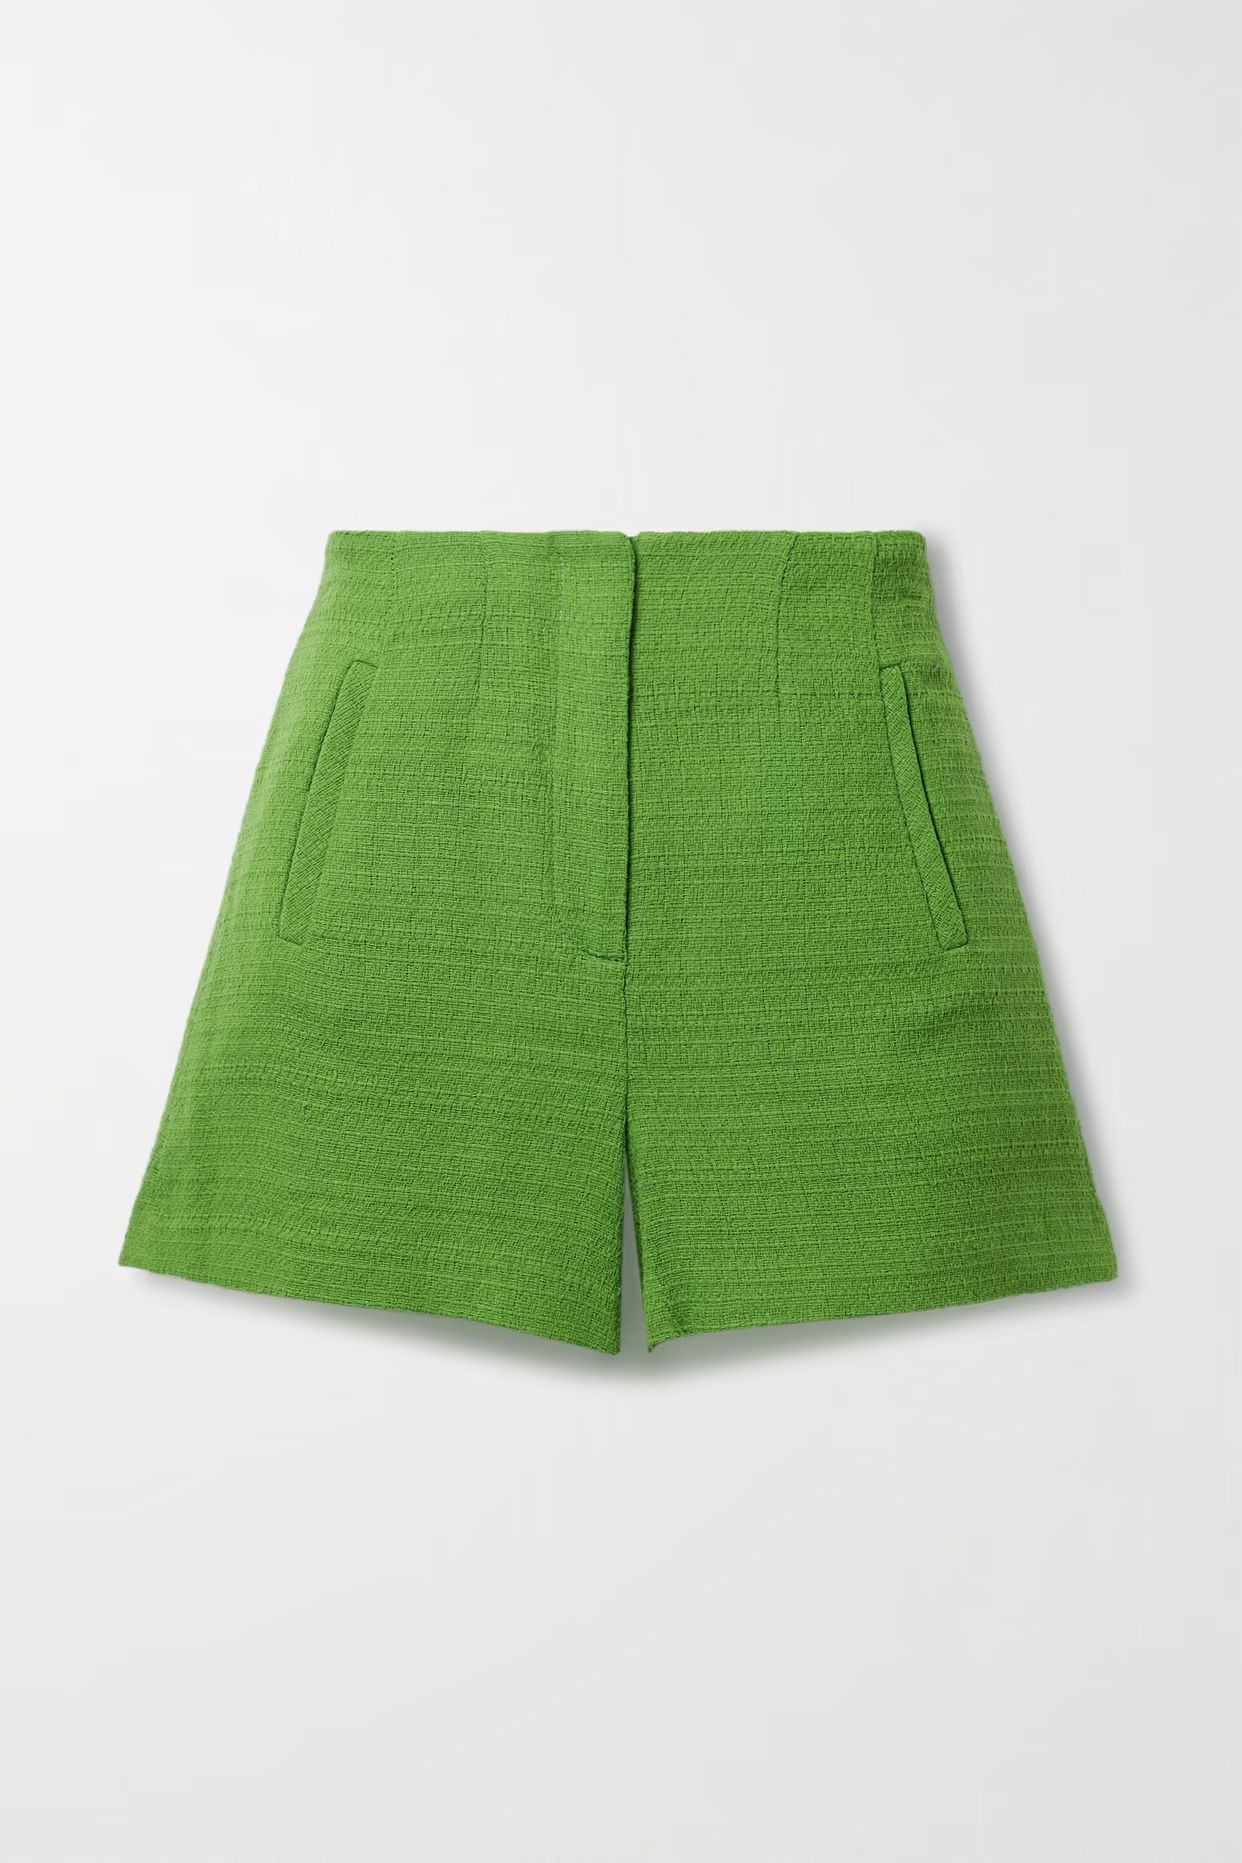 Veronica Beard - Jazmin Cotton-tweed Shorts - Green | NET-A-PORTER (US)